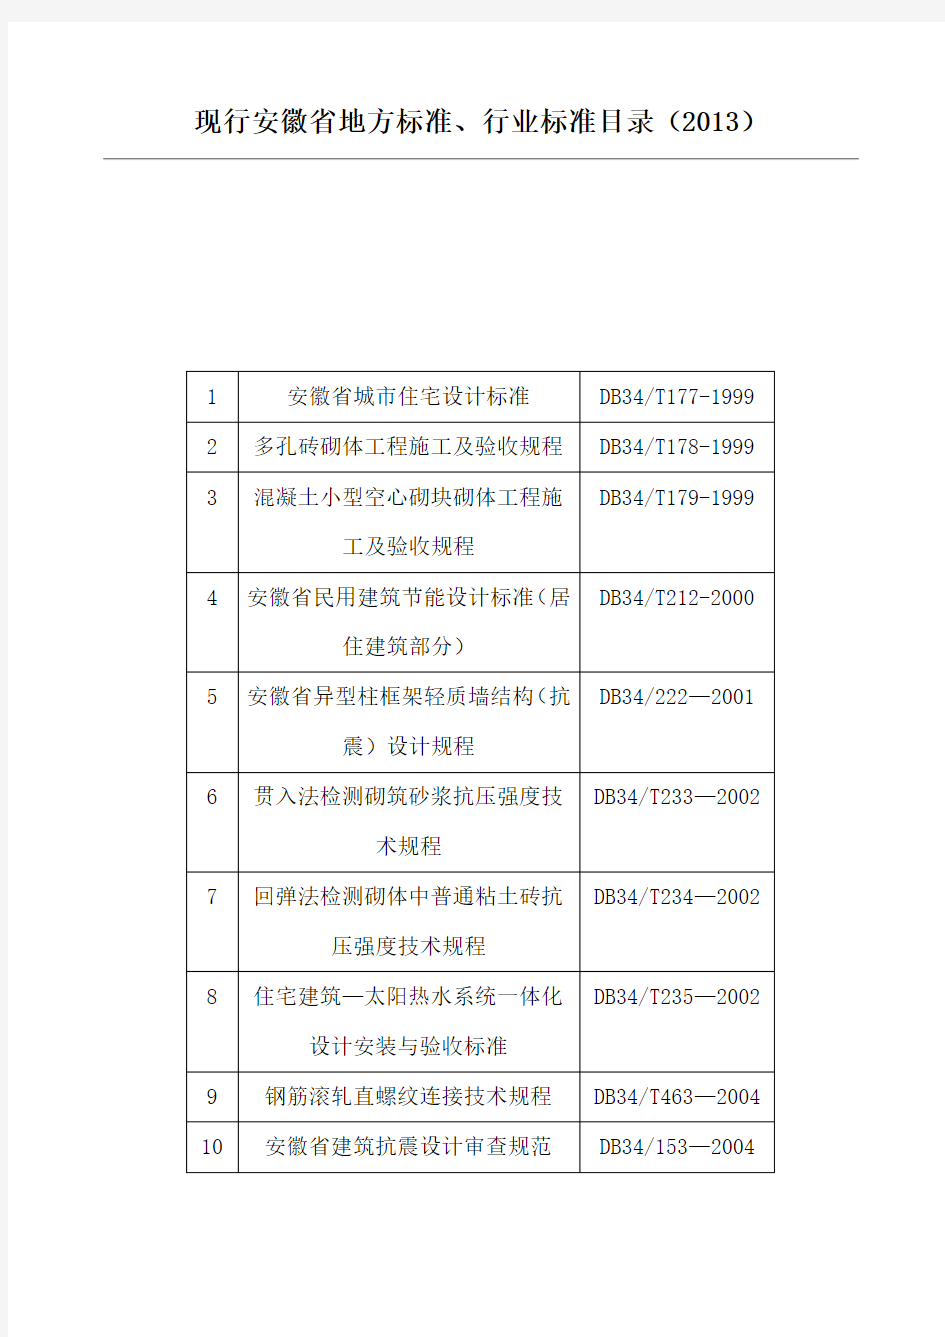 现行安徽省地方标准、行业标准目录(2013)